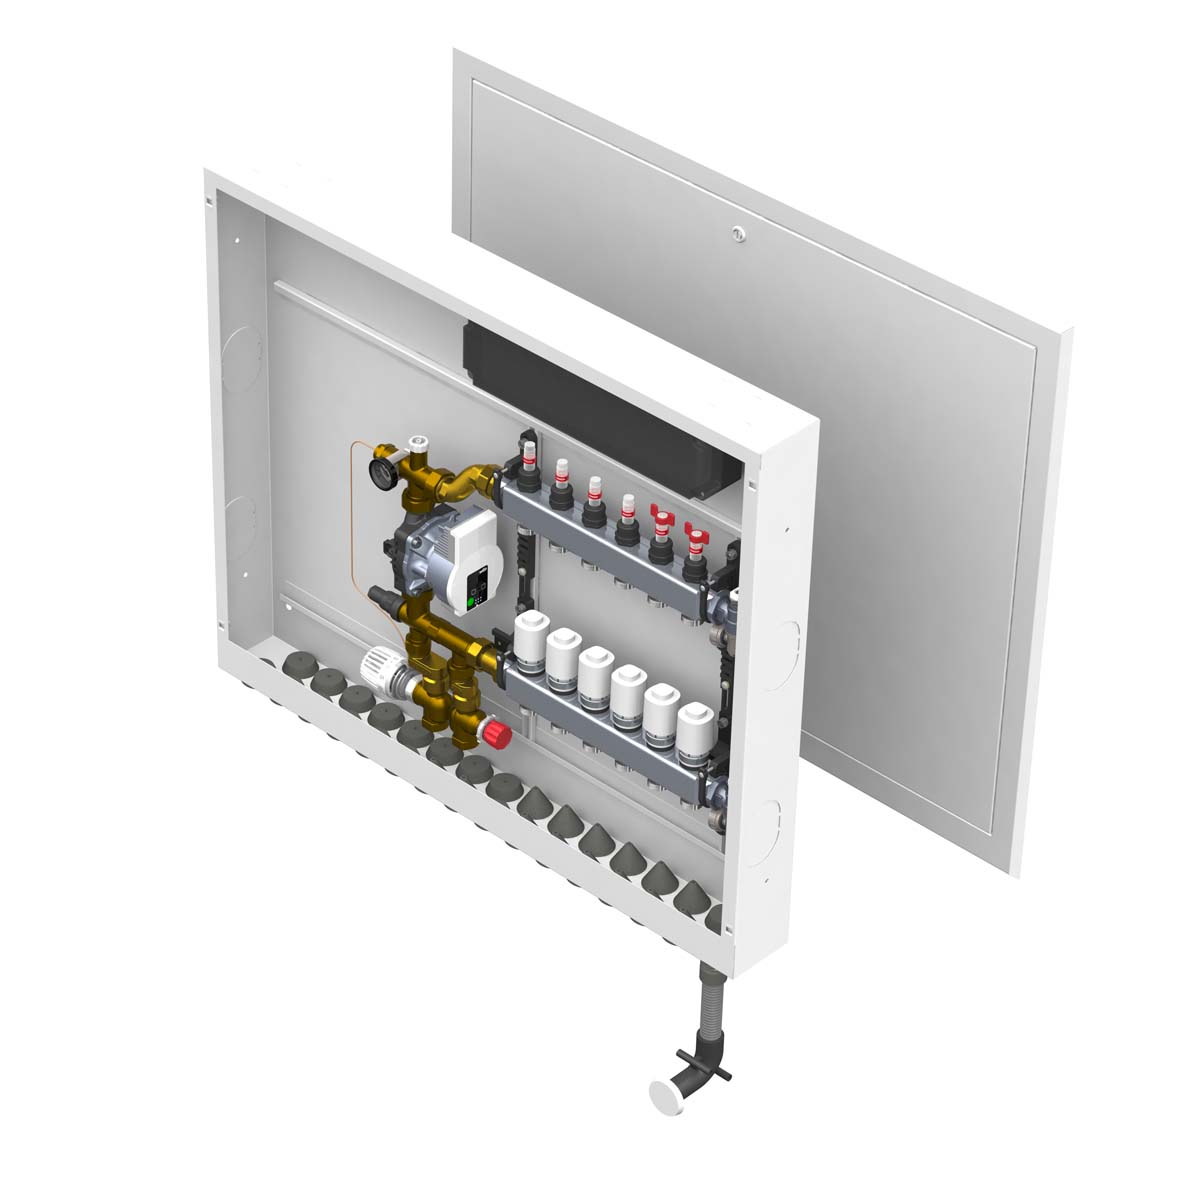 Featured image for “Golvvärmeskåp med shunt, färdigmonterat, för inbyggnad - Flera rum upp till 175 kvm”